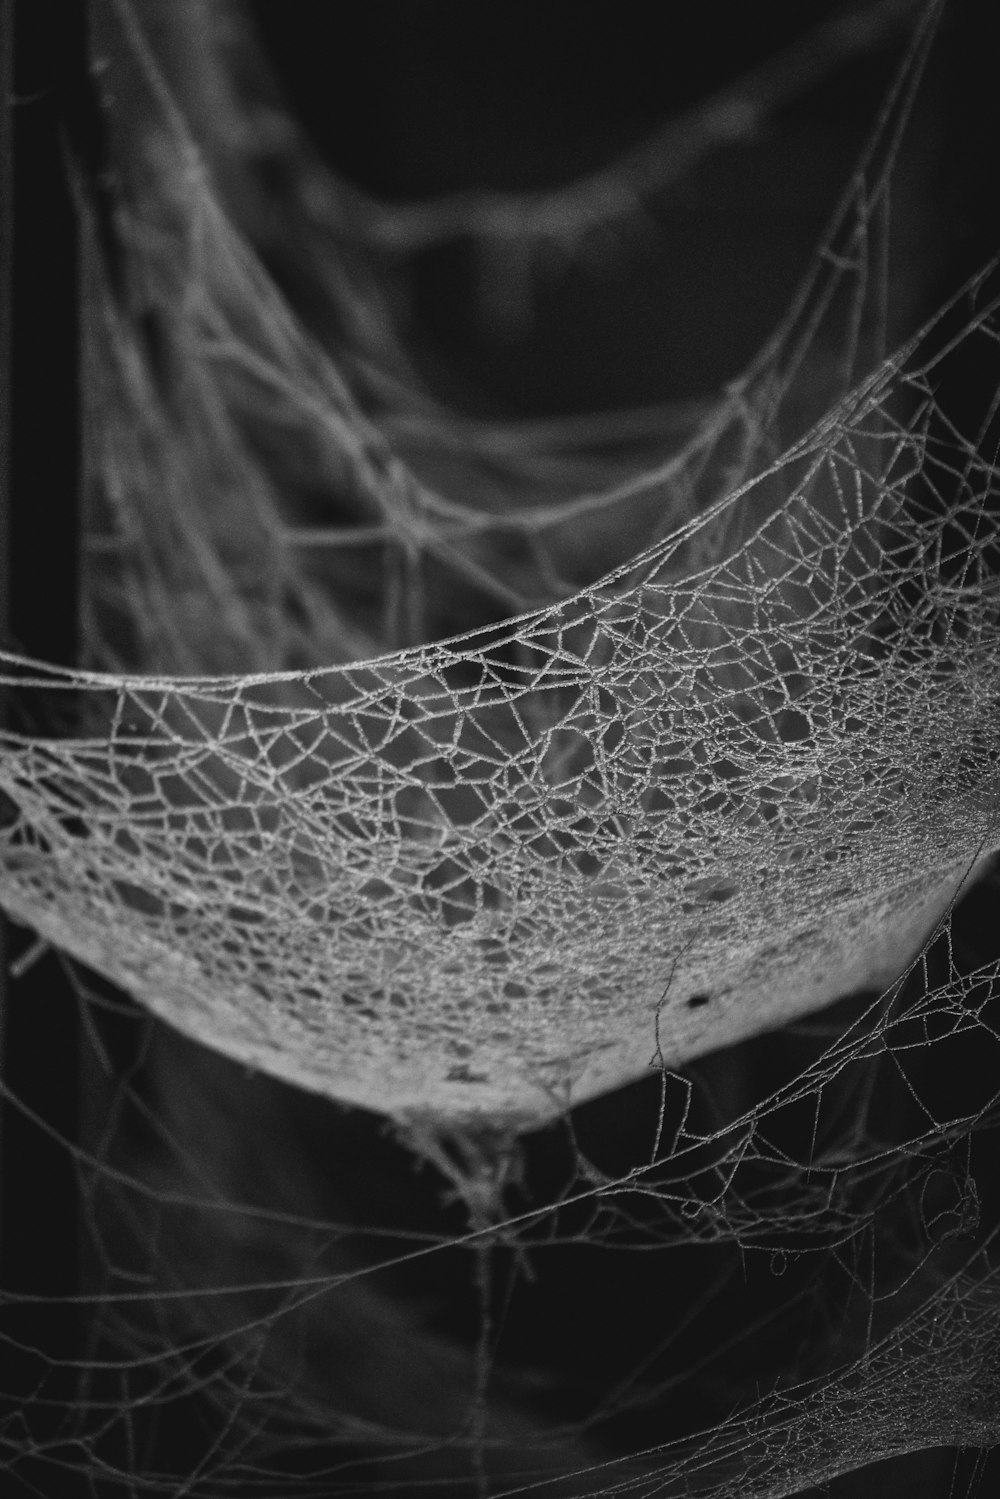 Una foto en blanco y negro de una tela de araña